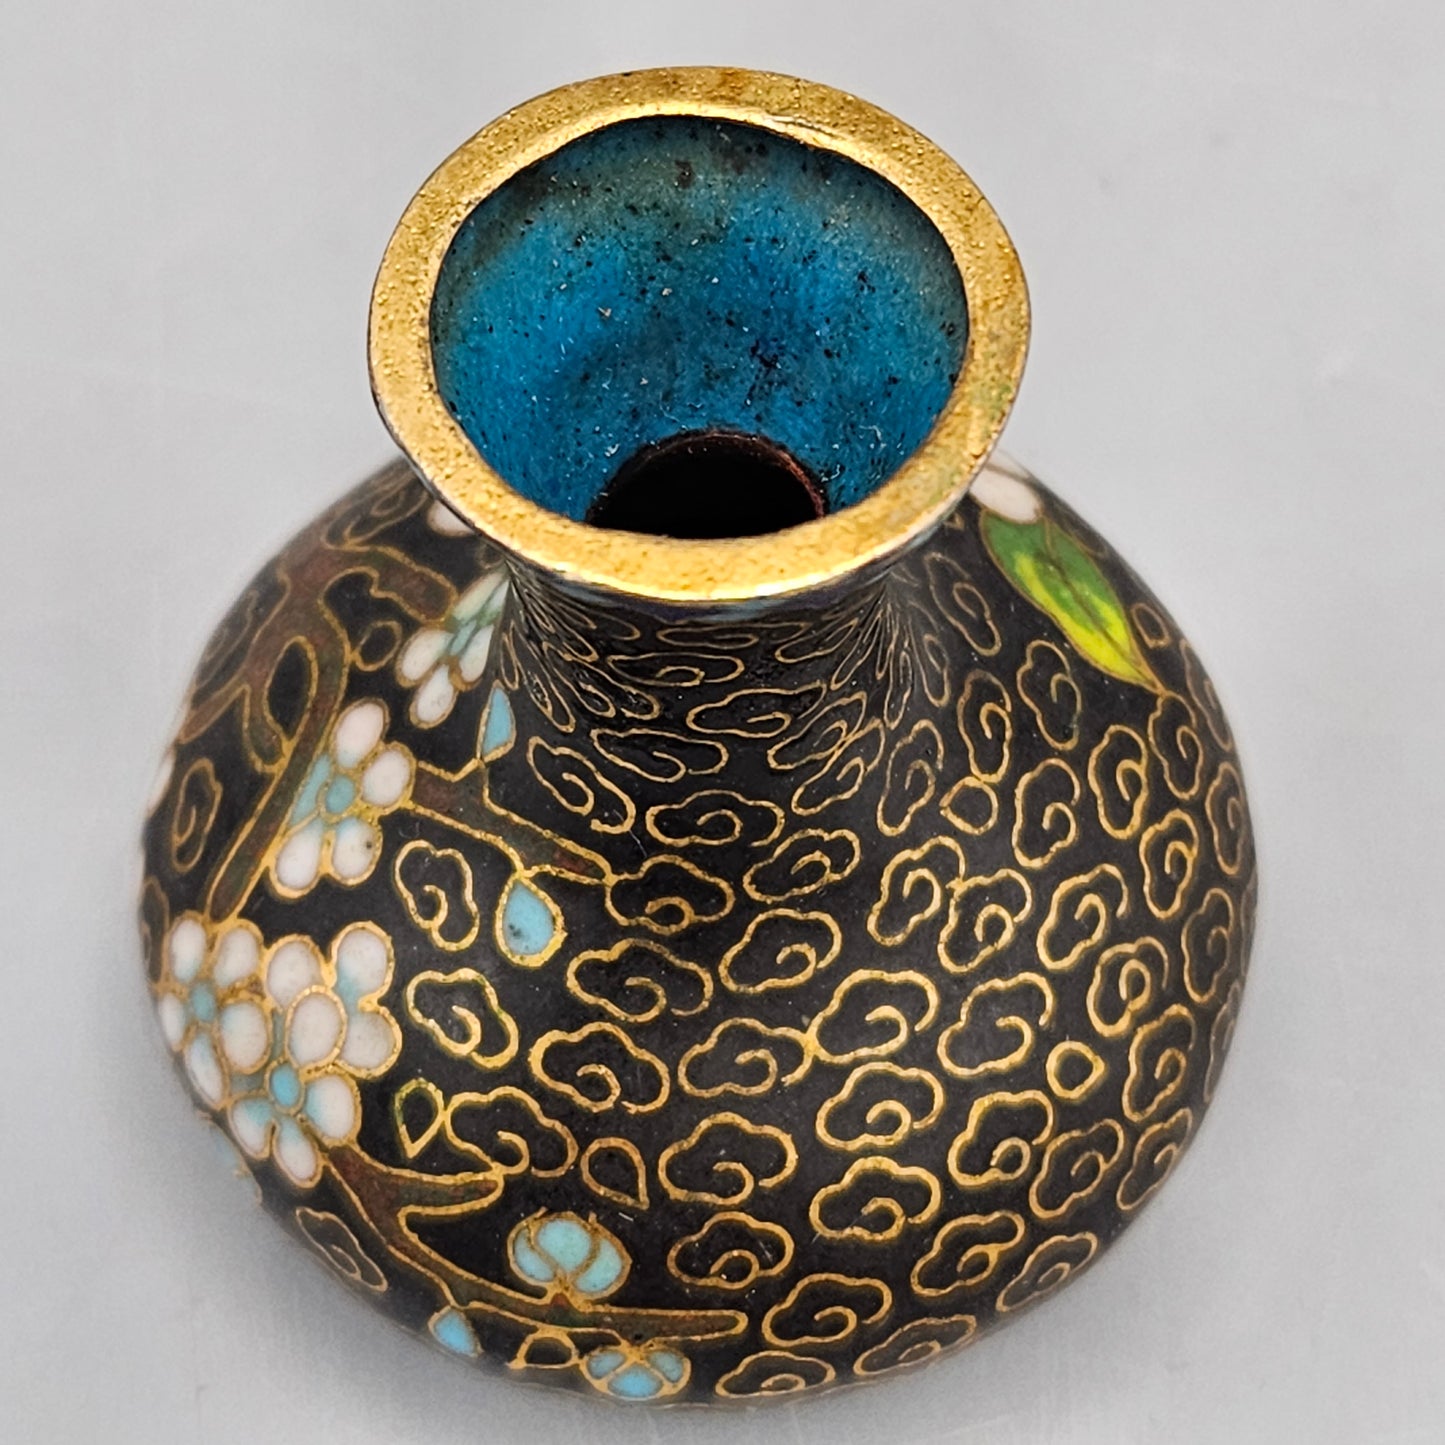 Miniature Chinese Cloisonné Vase